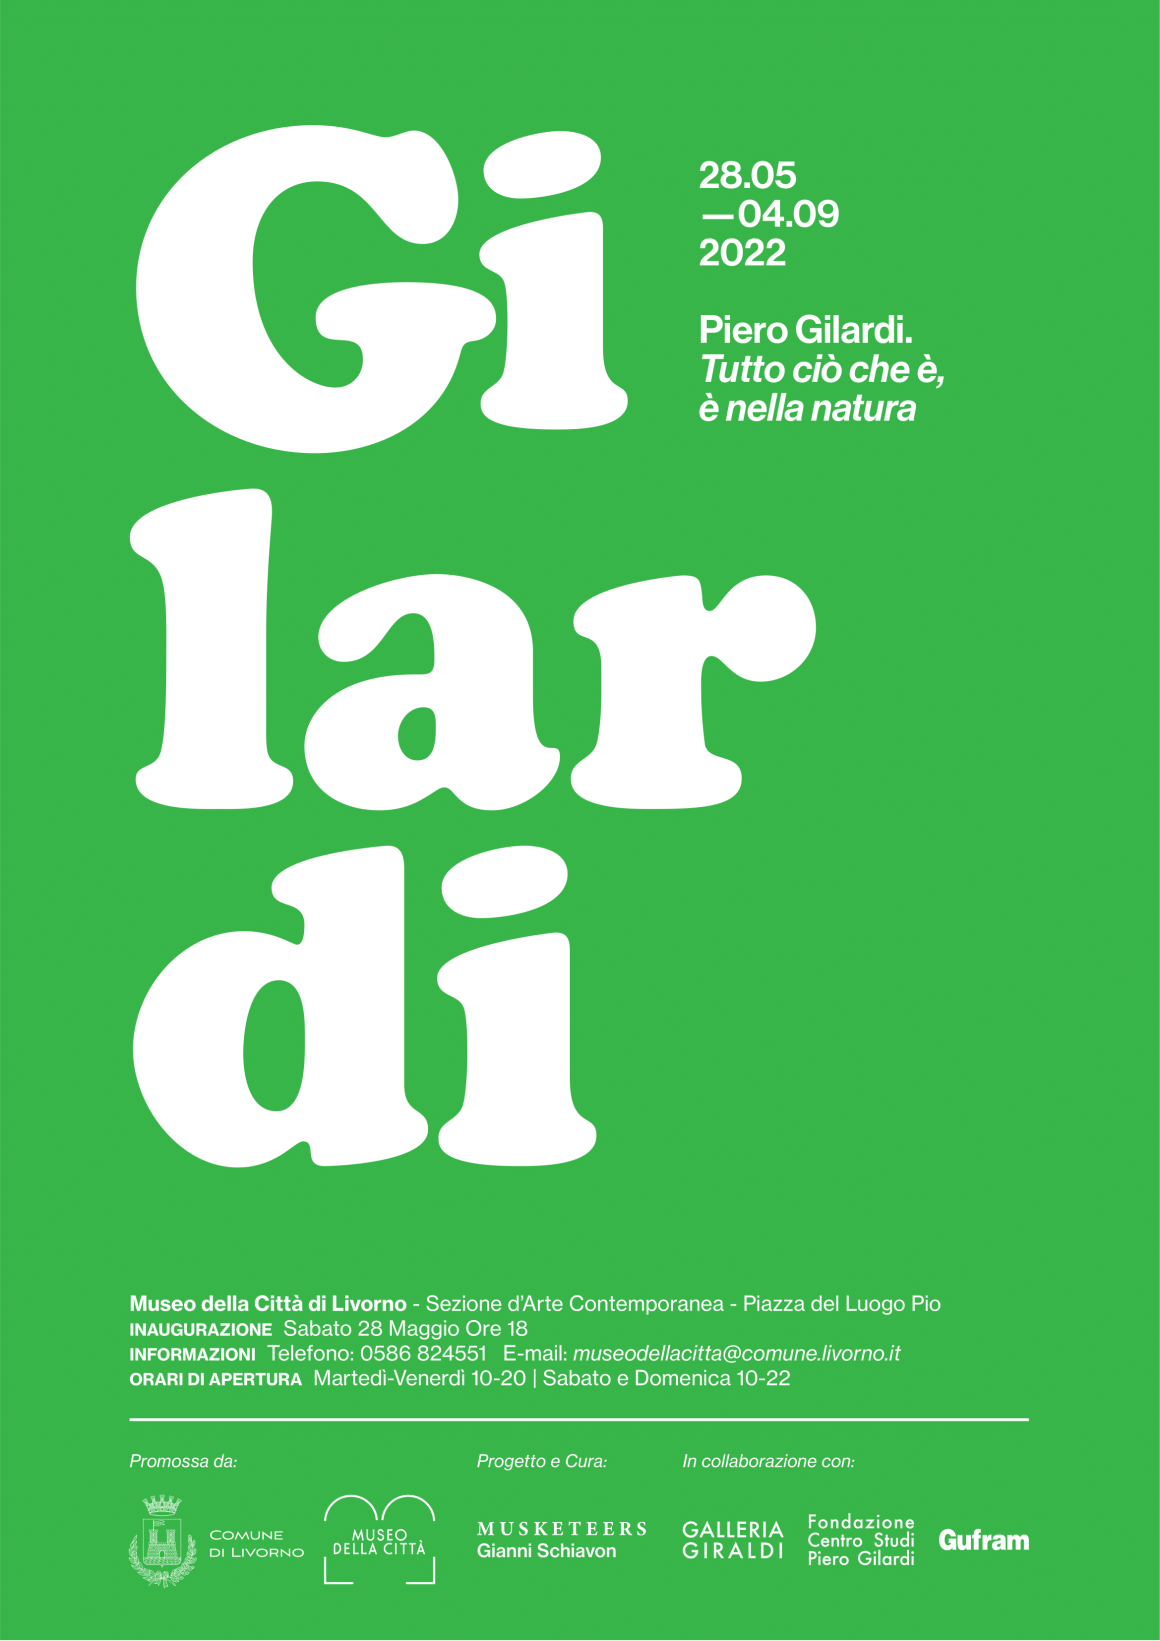 Inaugurazione Mostra ‘Piero Gilardi. Tutto ciò che è, è nella natura’